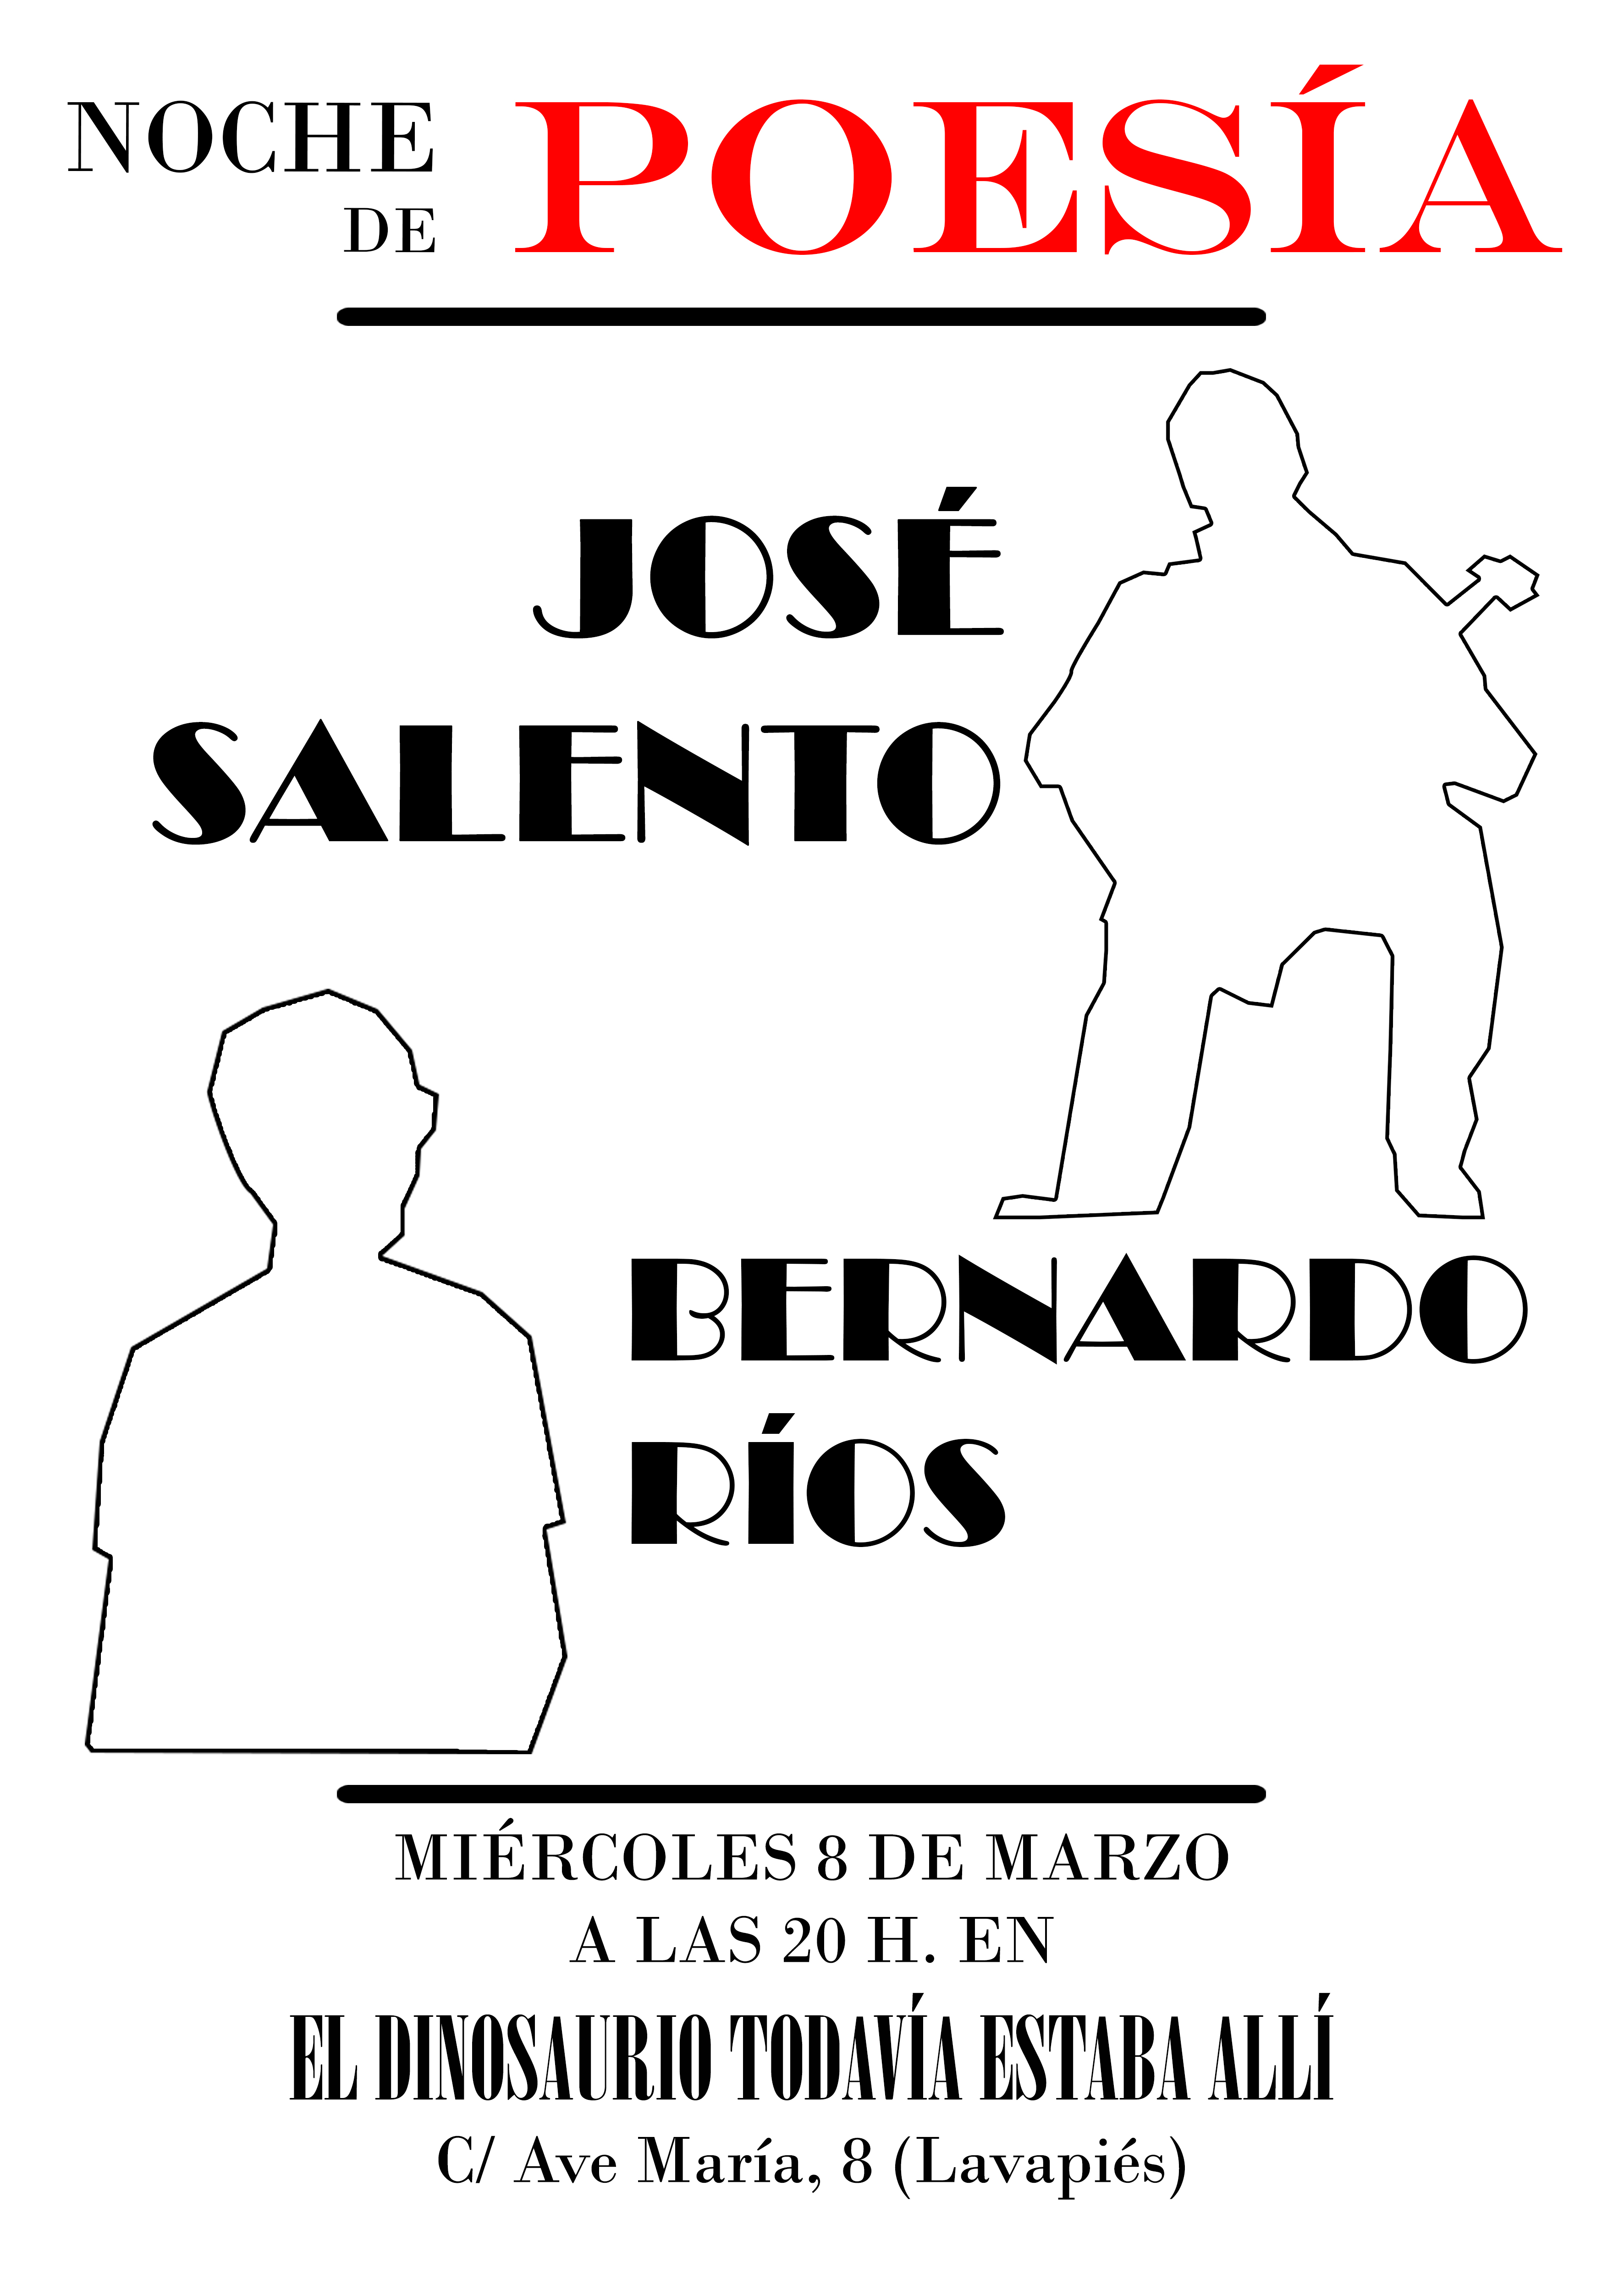 José Salento